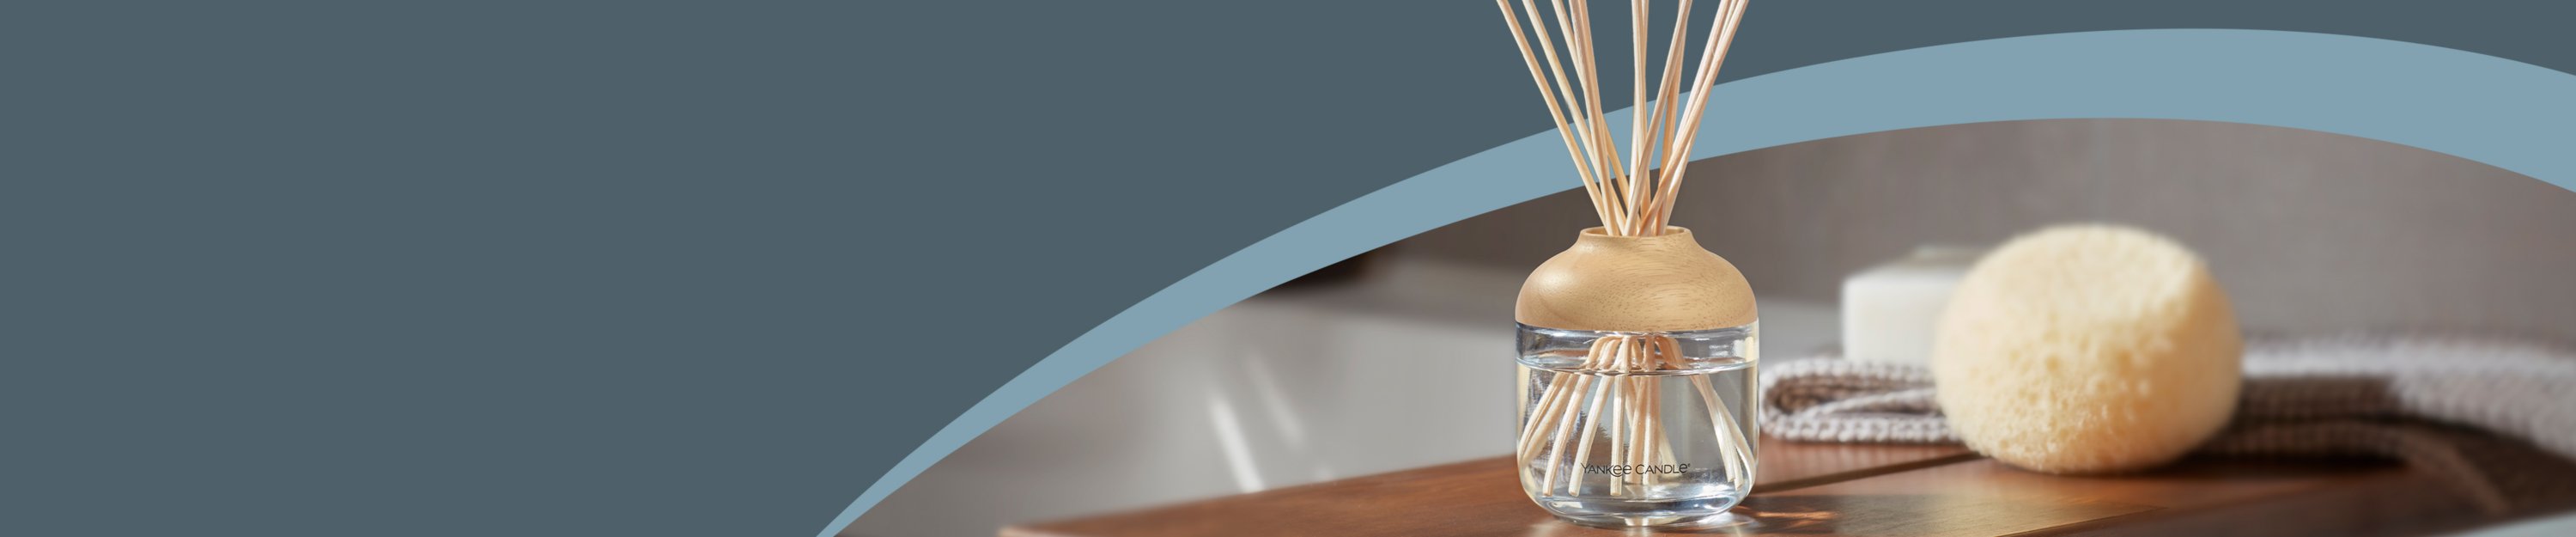 Luxuriöser Aromatischer Duft Von Reed-Diffusor-Sticks Glasflasche